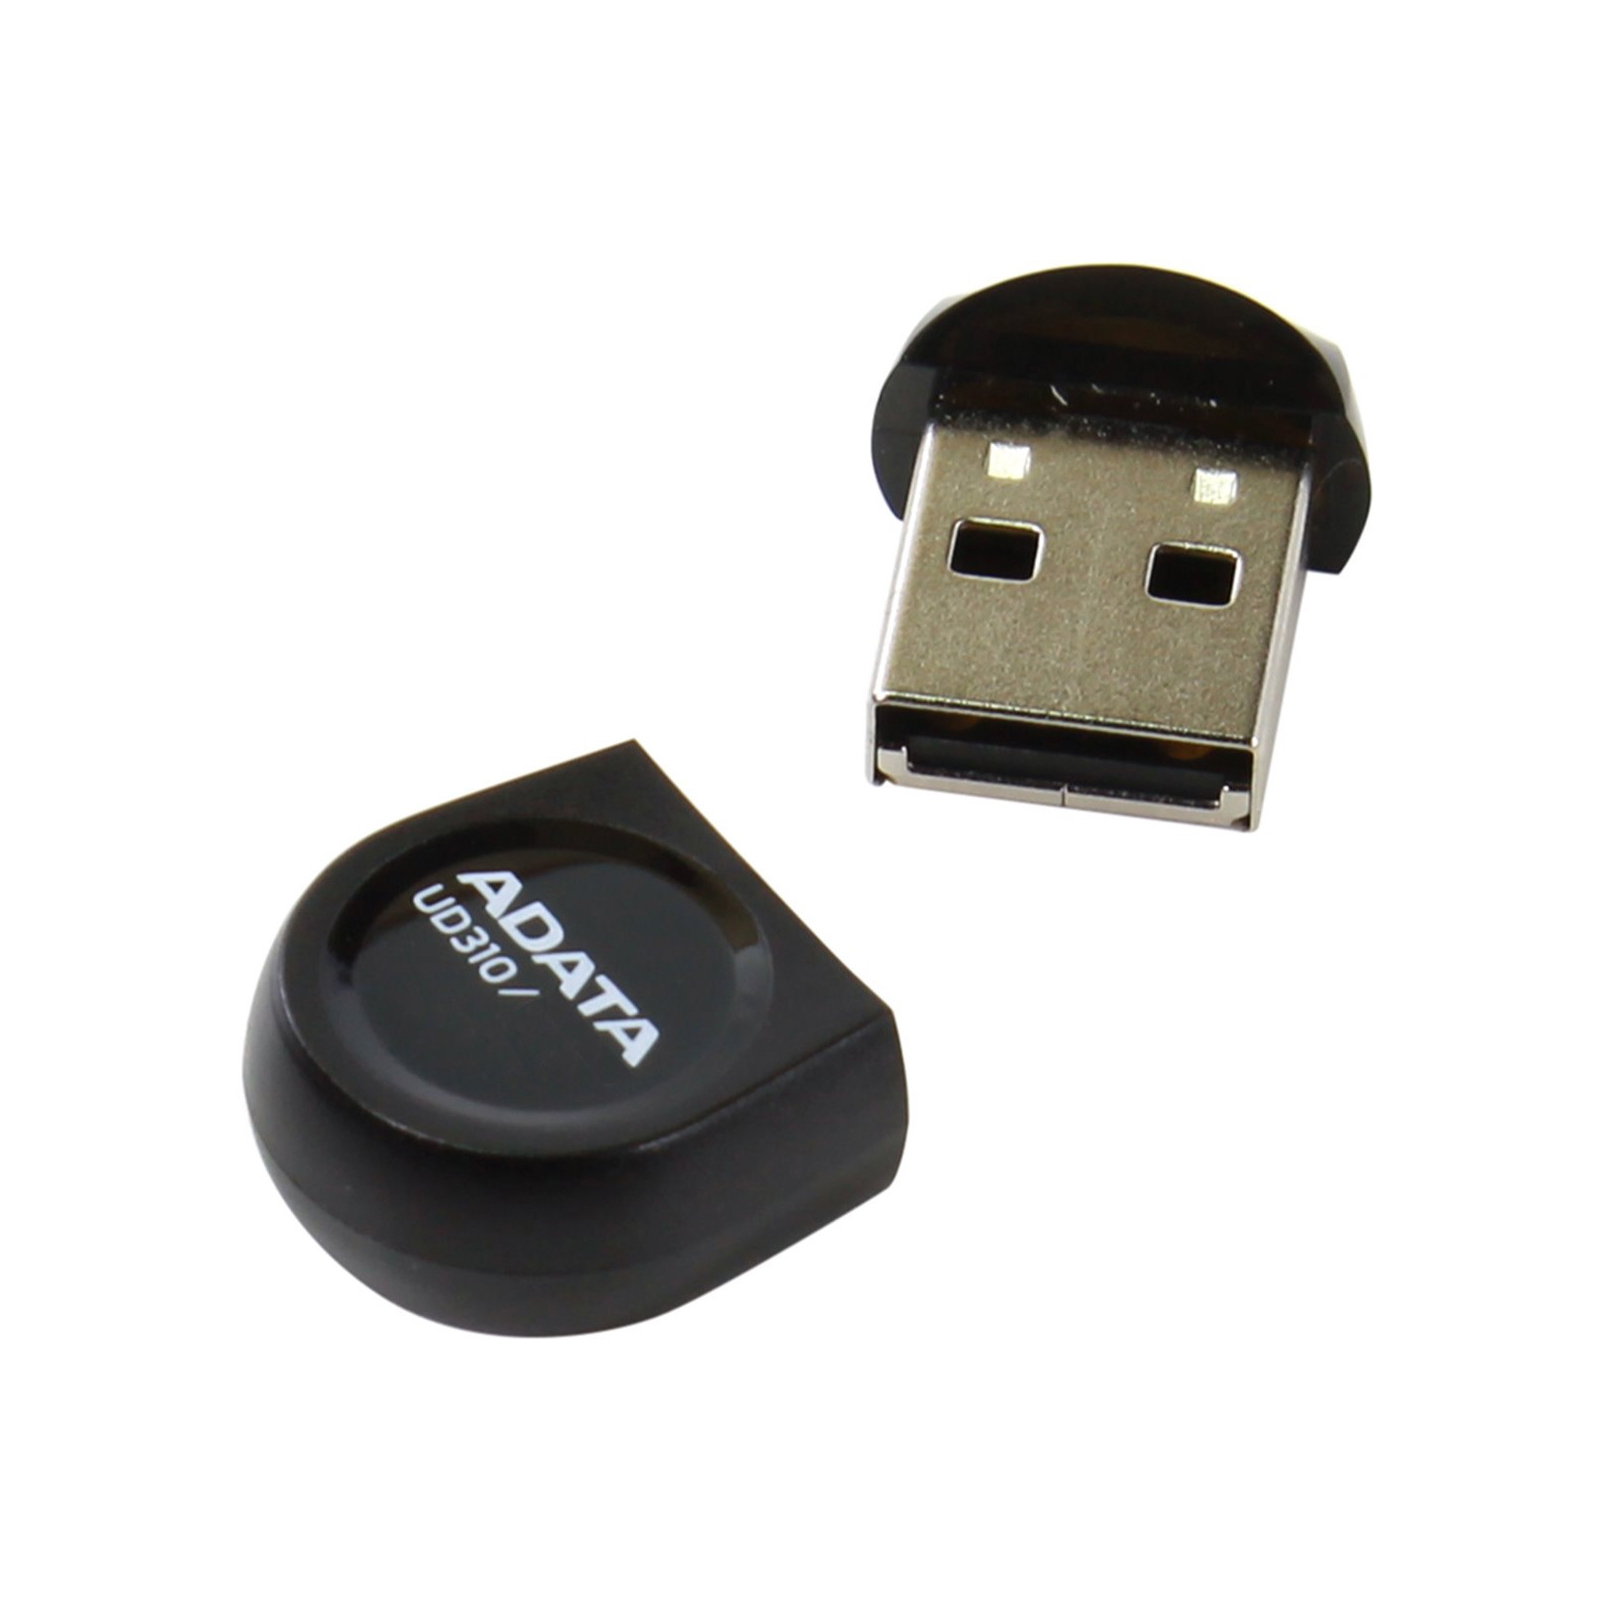 USB флеш накопитель ADATA 32GB DashDrive Durable UD310 Black USB 2.0 (AUD310-32G-RBK) изображение 3